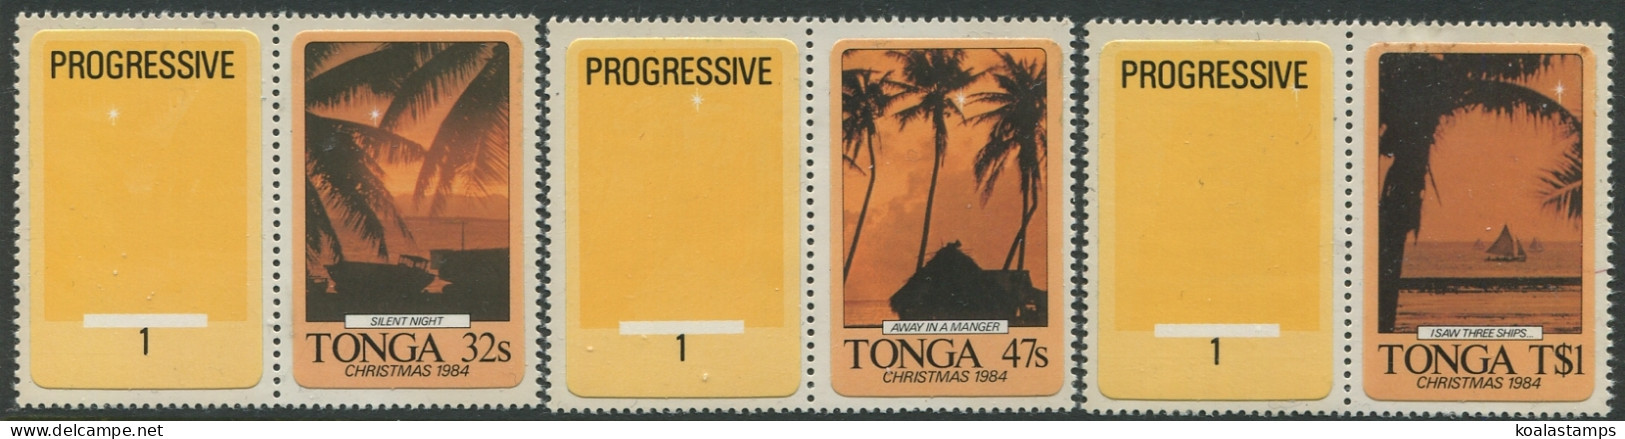 Tonga 1984 SG893-895 Christmas Progressives Set MNH - Tonga (1970-...)